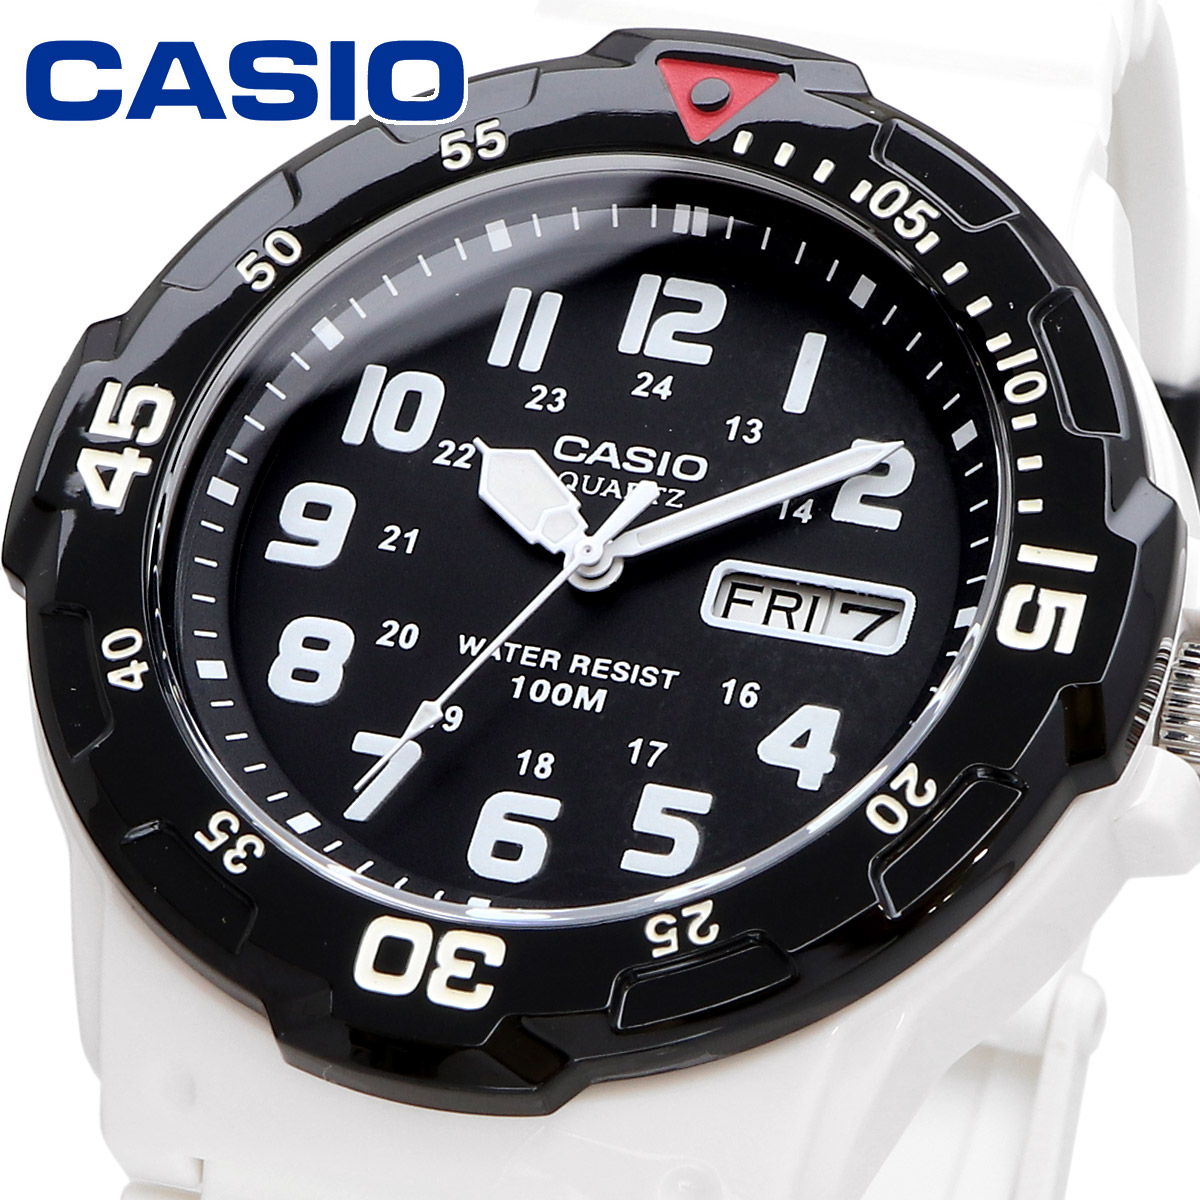 【父の日 ギフト】CASIO カシオ 腕時計 メンズ チープカシオ チプカシ 海外モデル アナログ  MRW-200HC-7BV